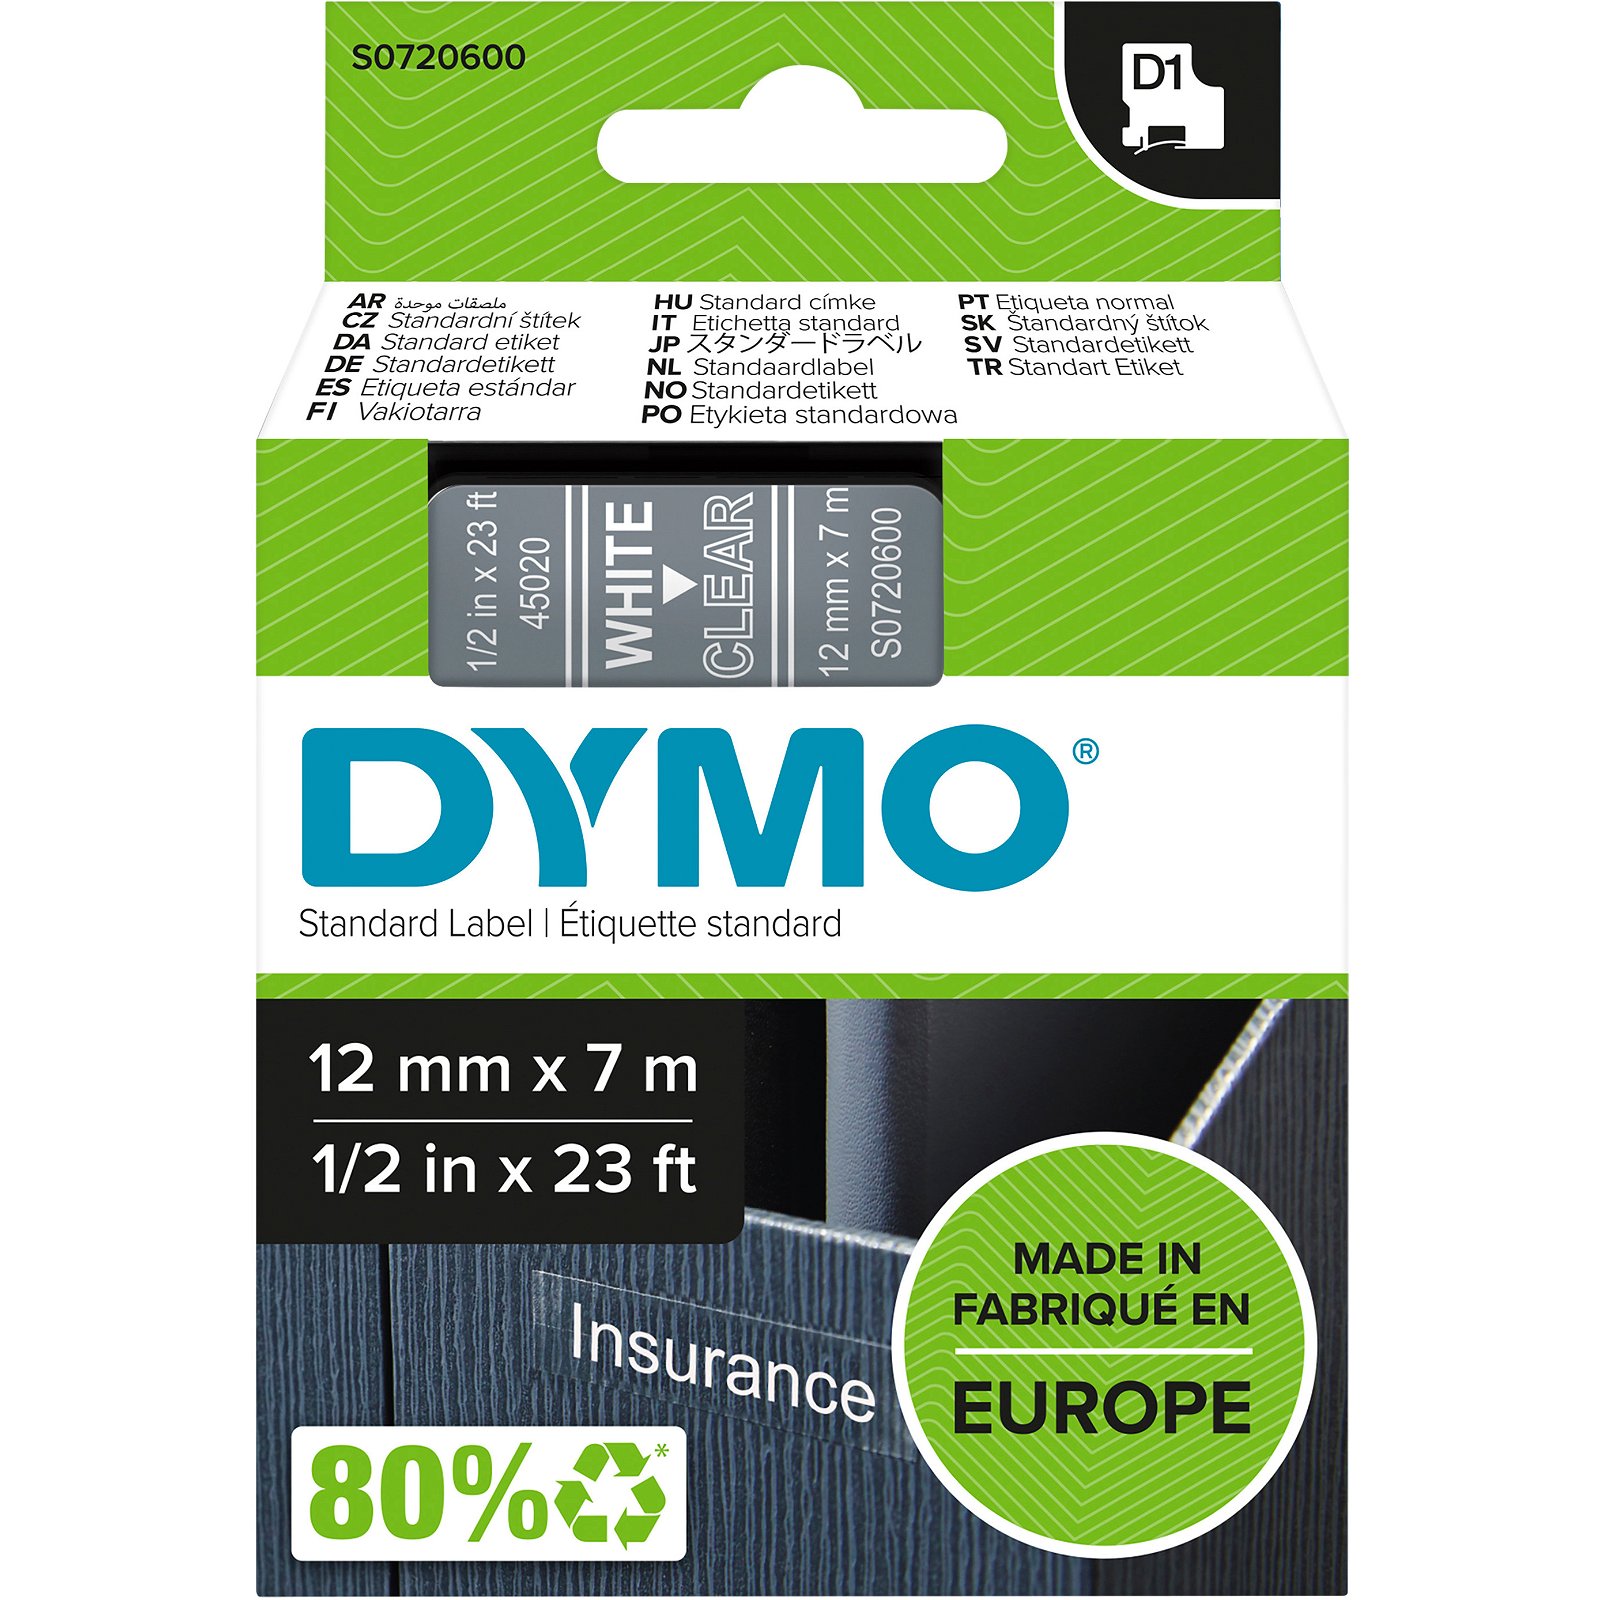 Dymo D1 standard tapekasette 12 mm hvid;klar Polyester